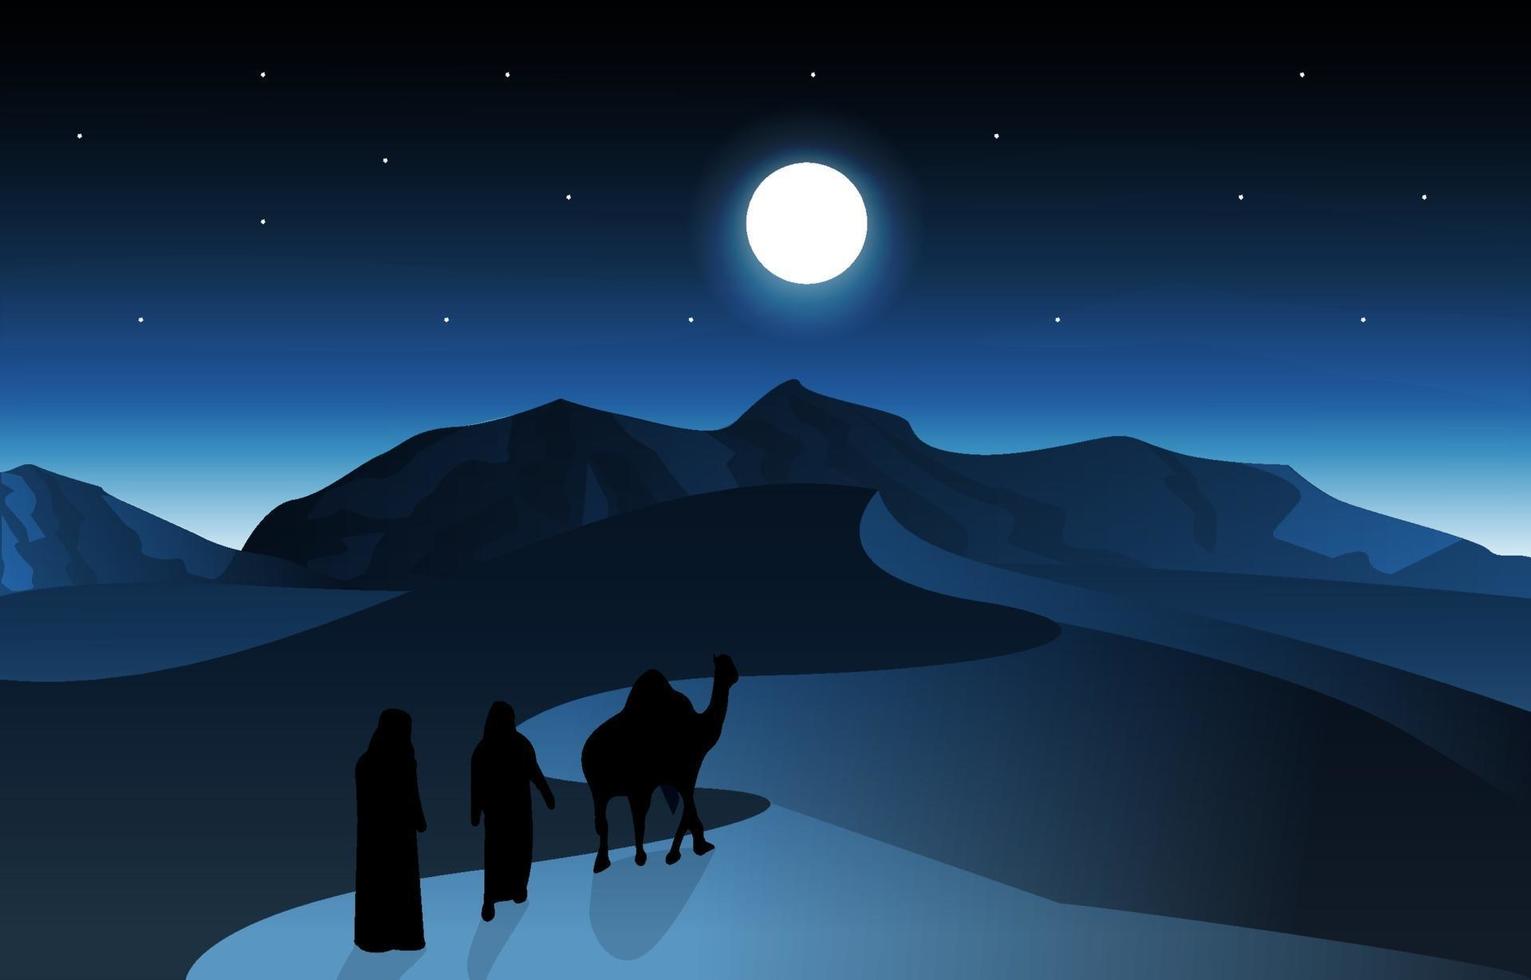 notte arabo deserto cammello carovana musulmana cultura islamica illustrazione vettore